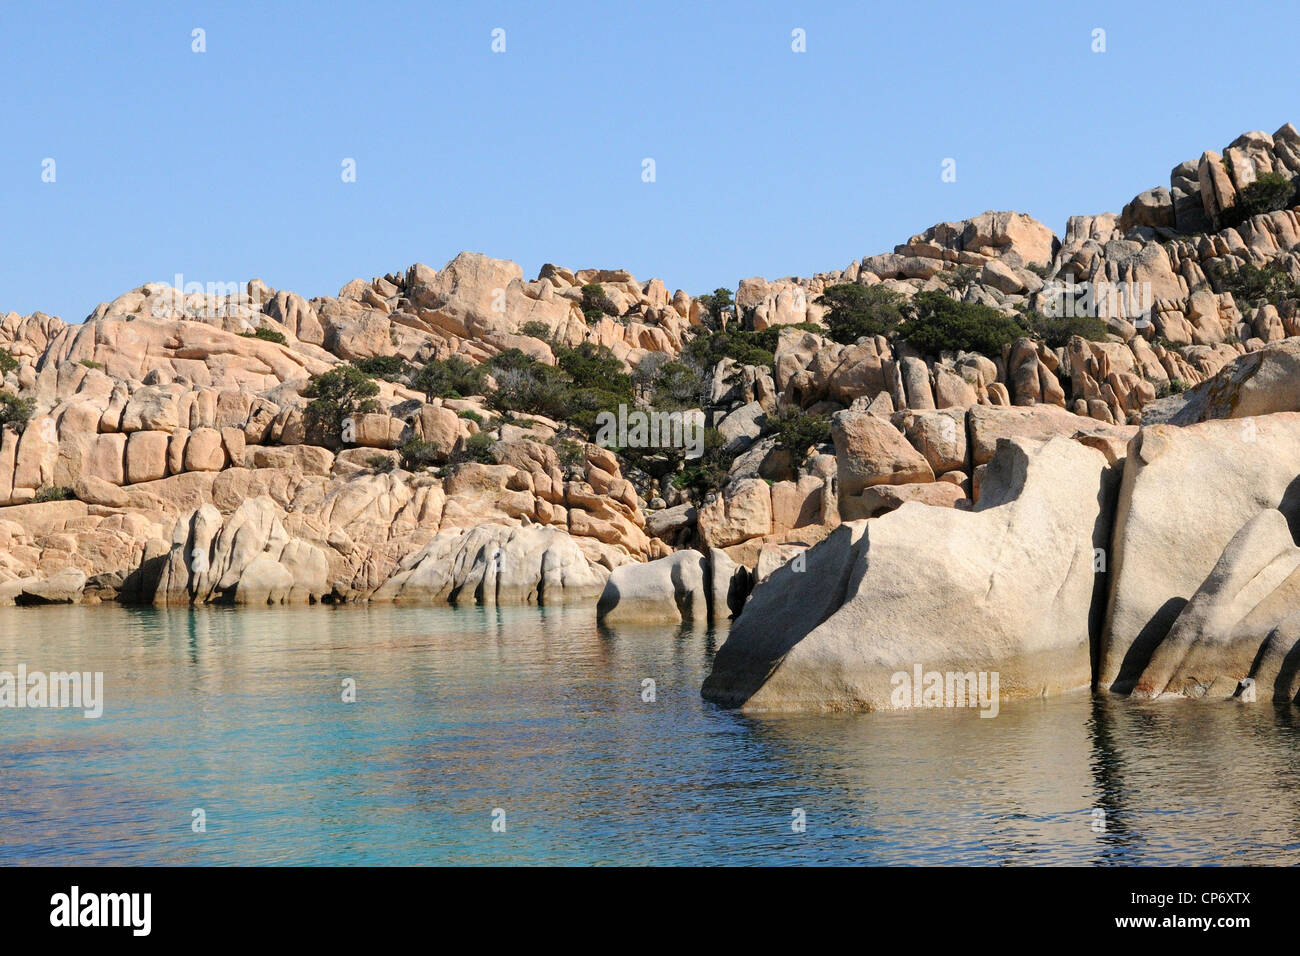 La formation rocheuse de Caprera dans le parc national de l'archipel de La Maddalena, Italie Banque D'Images